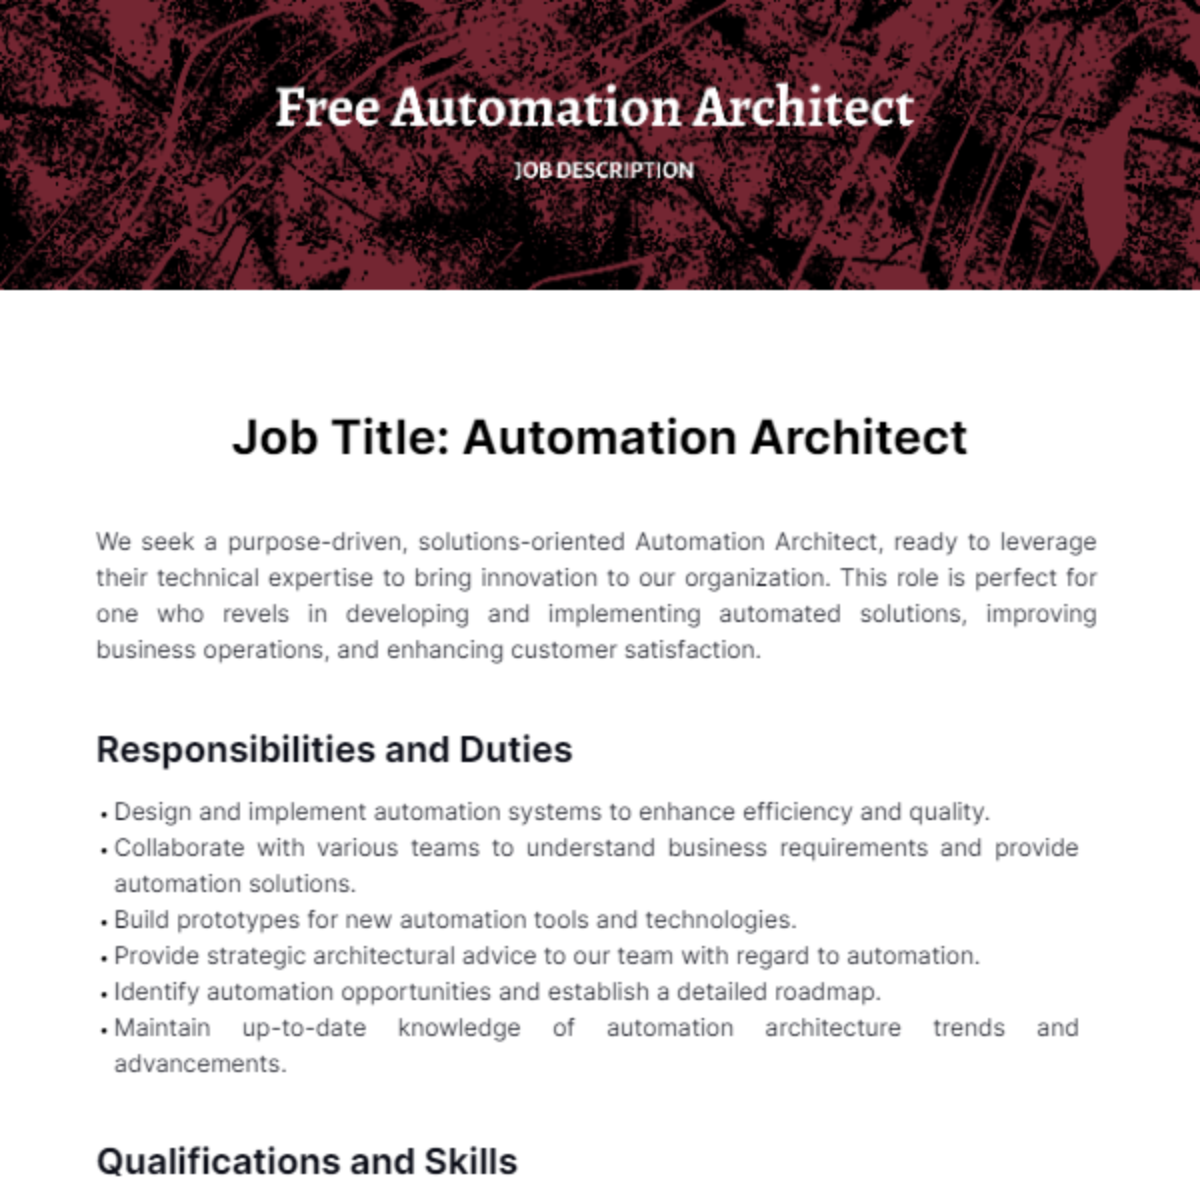 Free Automation Architect Job Description Template